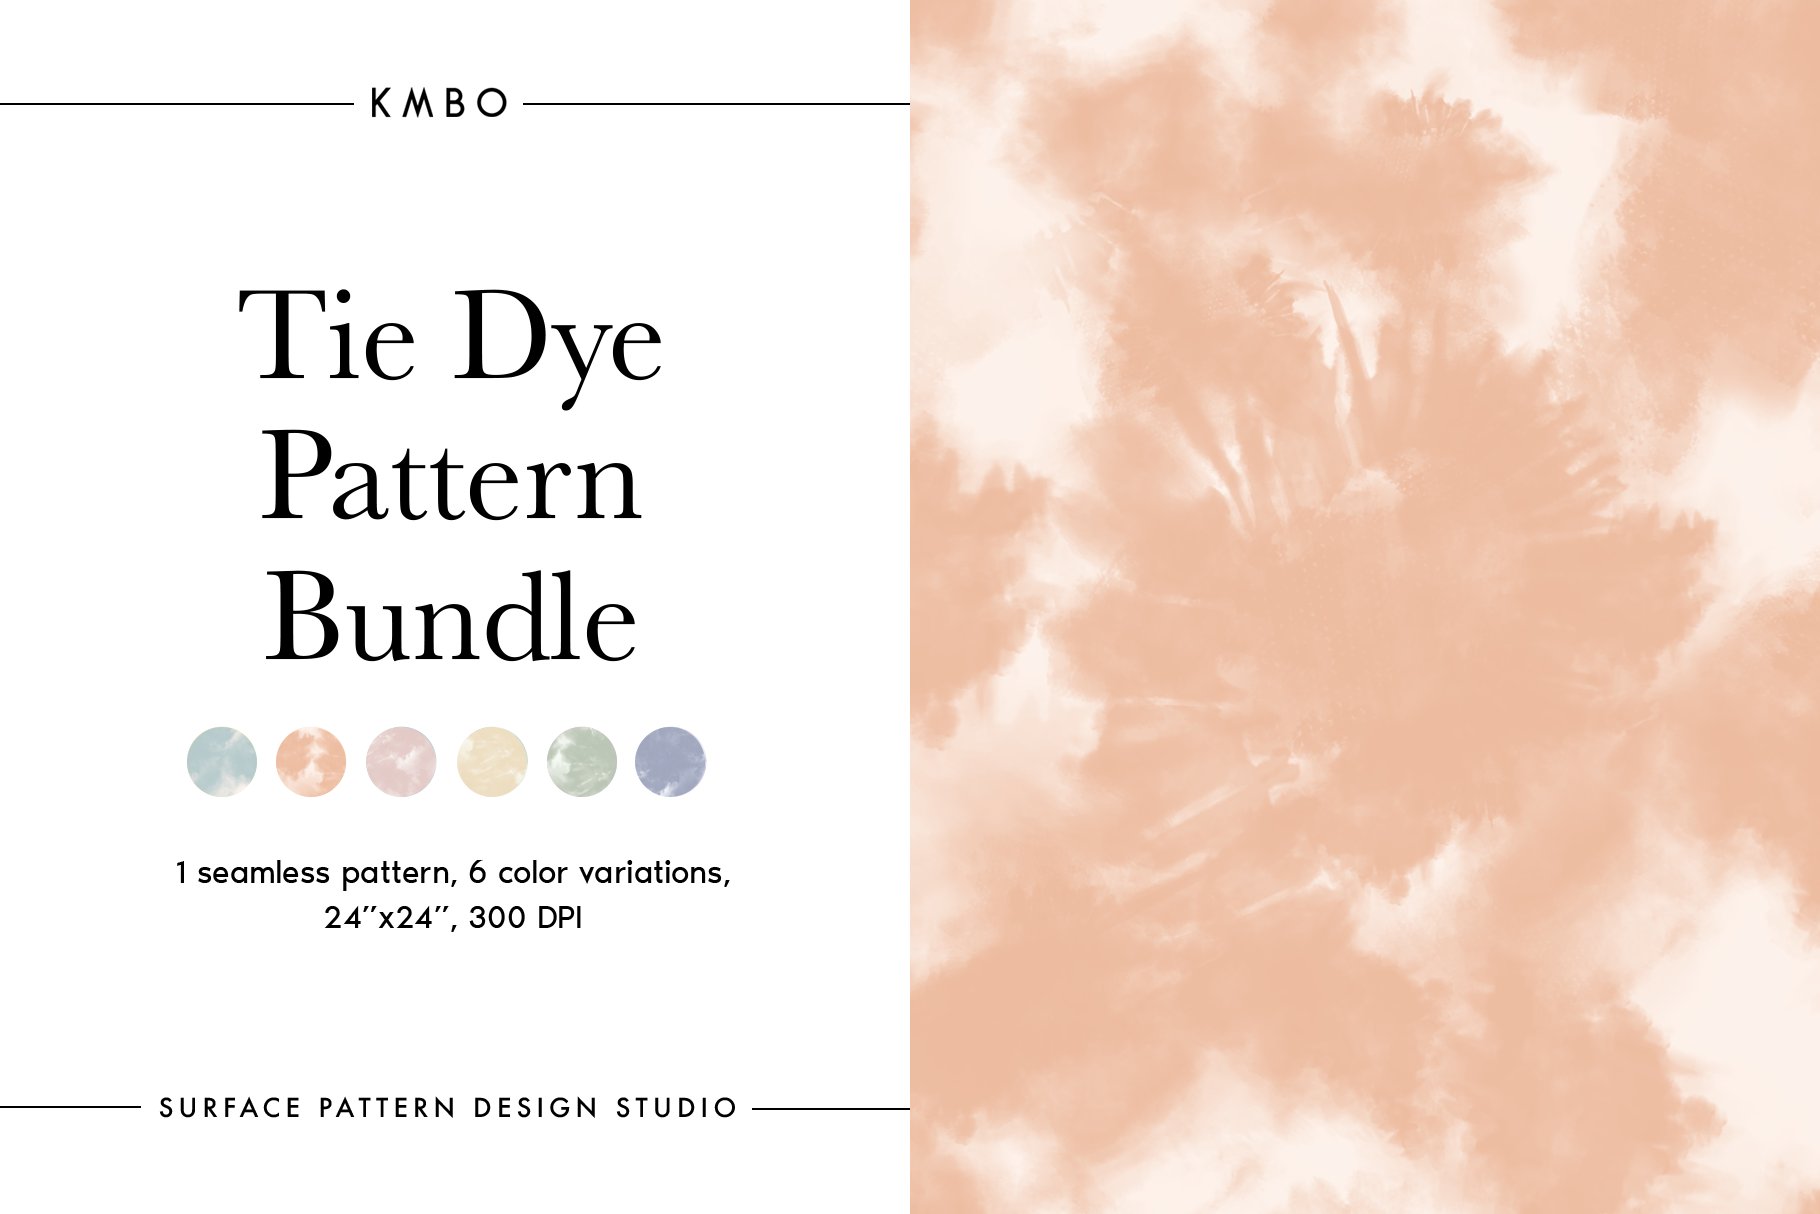 Bohemian Tie Dye Pattern Bundle cover image.